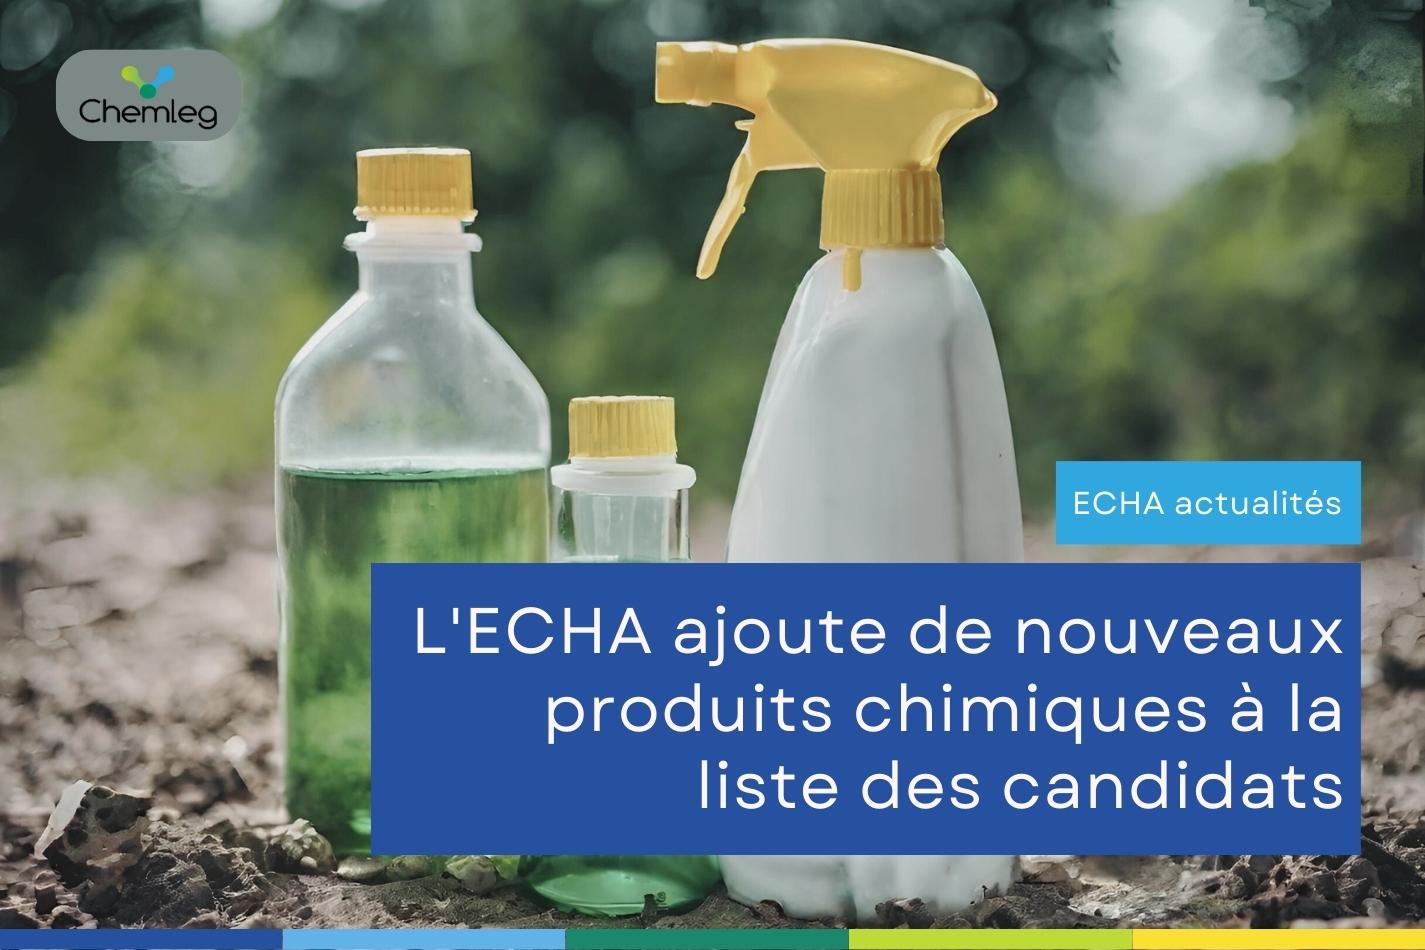 Cinq produits chimiques dangereux ajoutés à la liste des candidats de l'ECHA